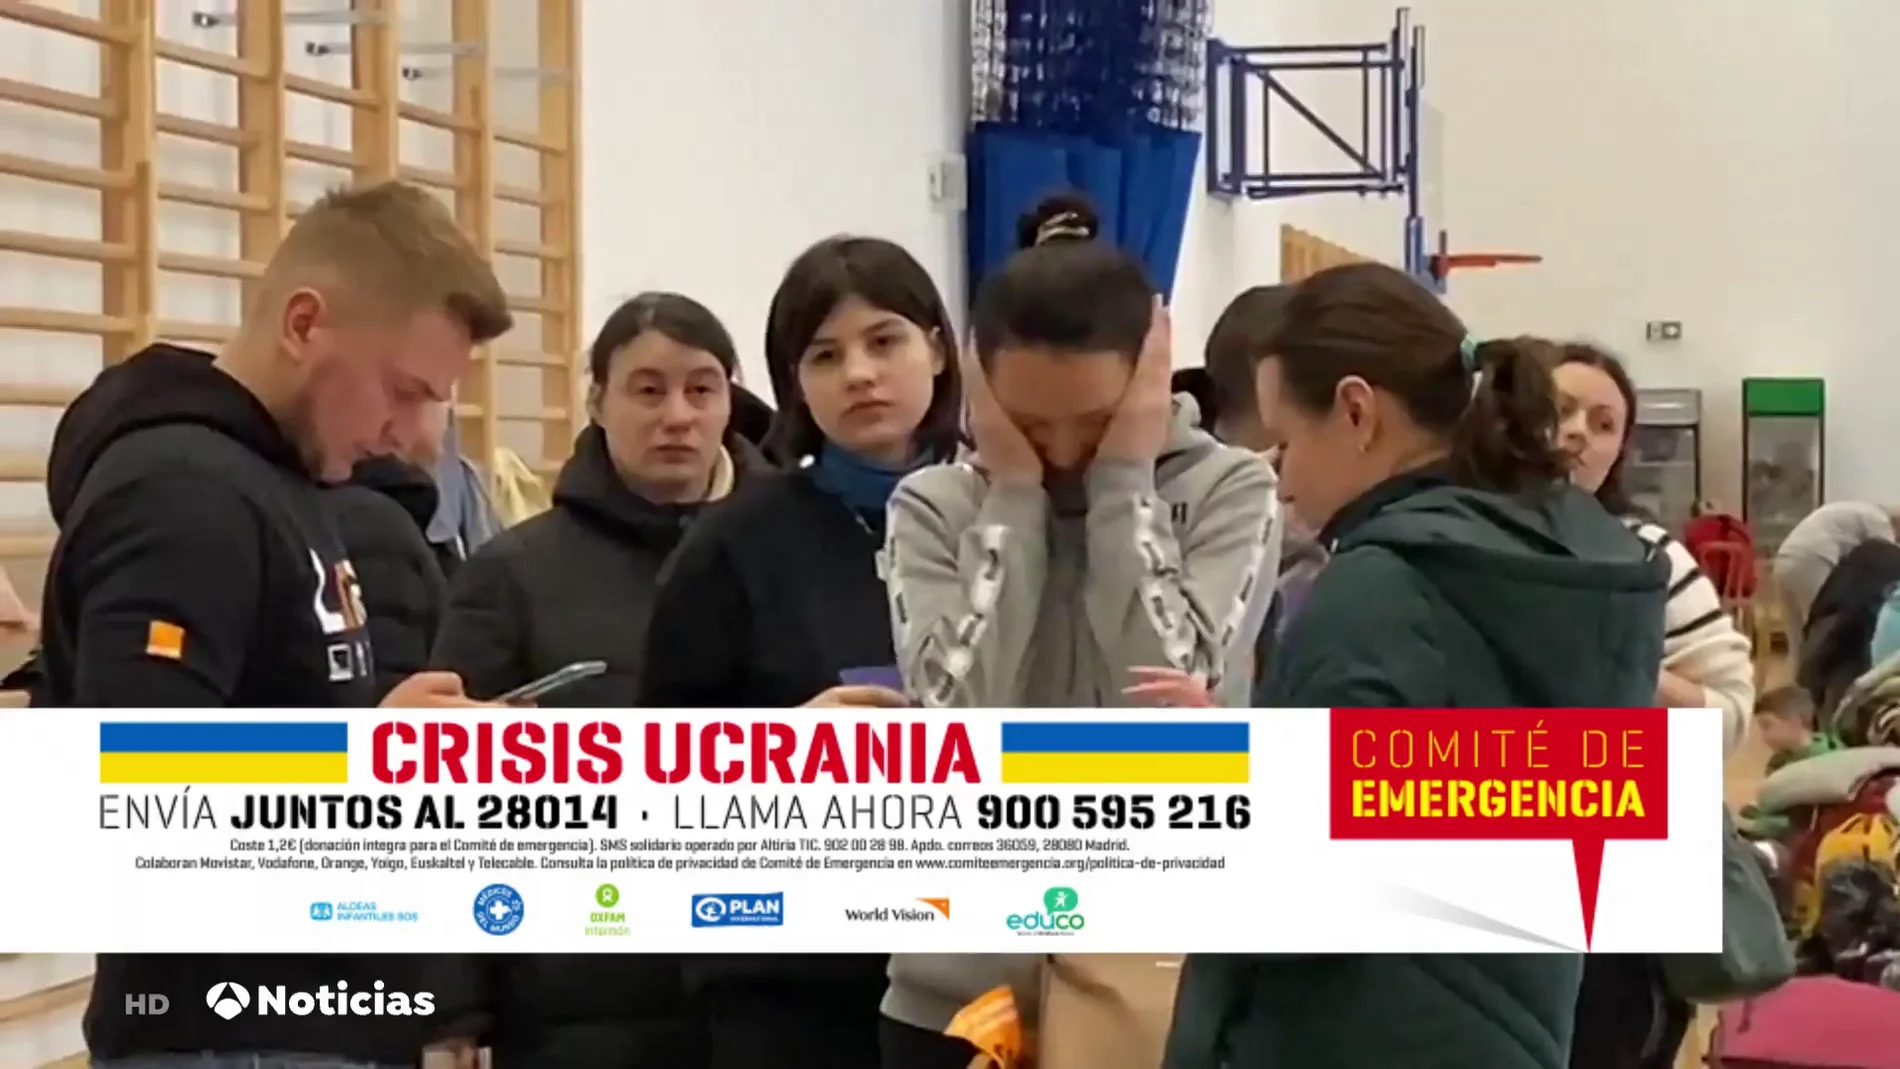 Activado el Comité de Emergencia, con la colaboración de Atresmedia, para canalizar la solidaridad por la crisis humanitaria de Ucrania